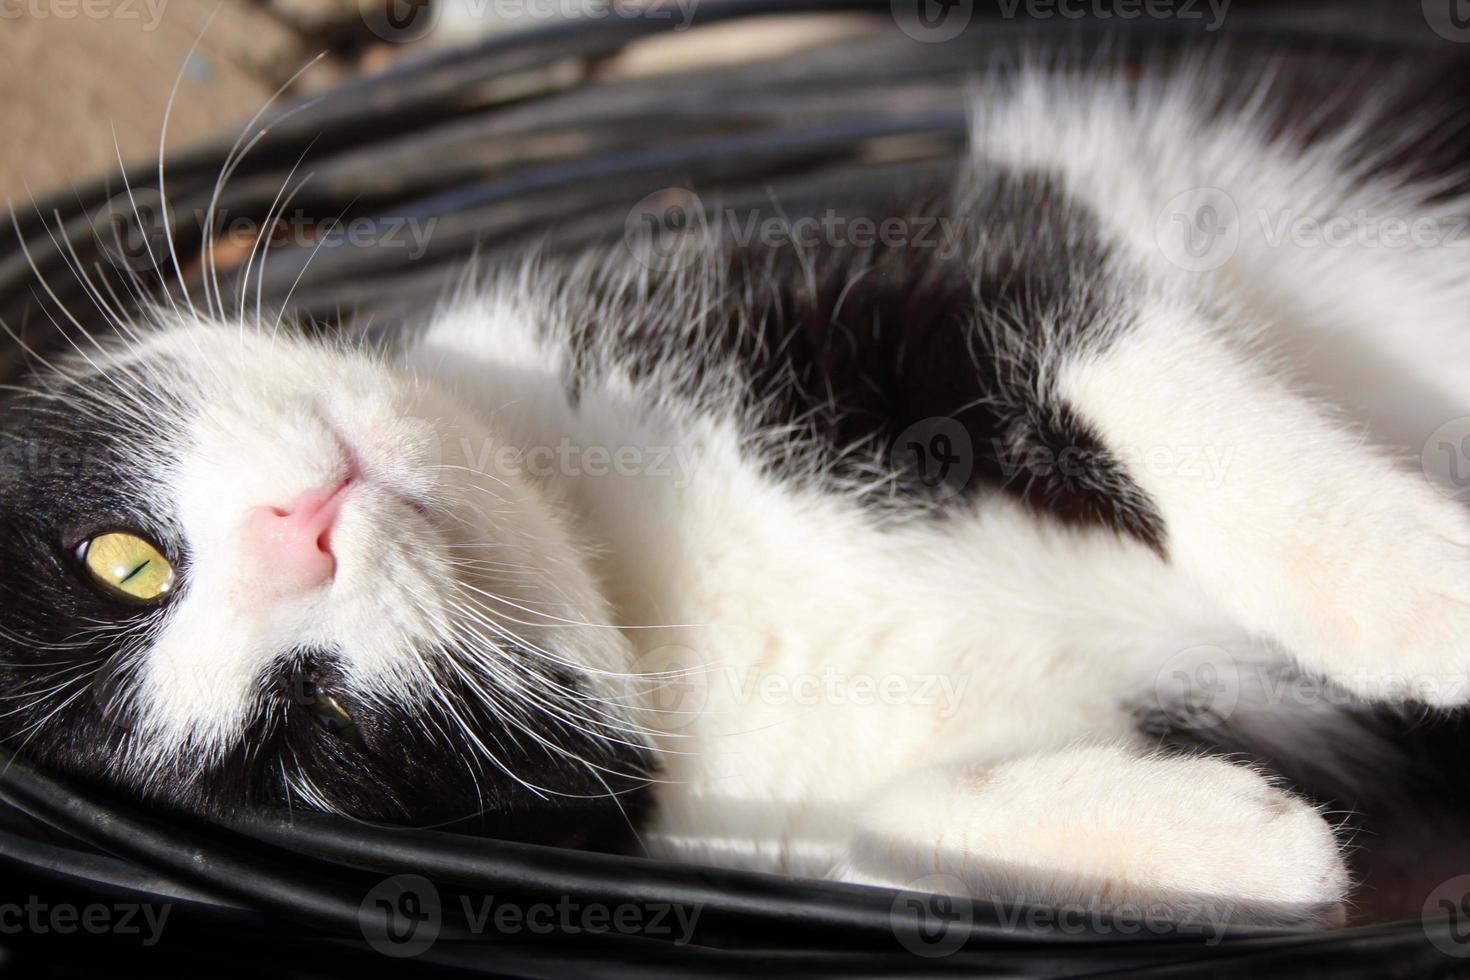 speels kat slaapt in elektrisch draden, katje Toneelstukken met draden foto